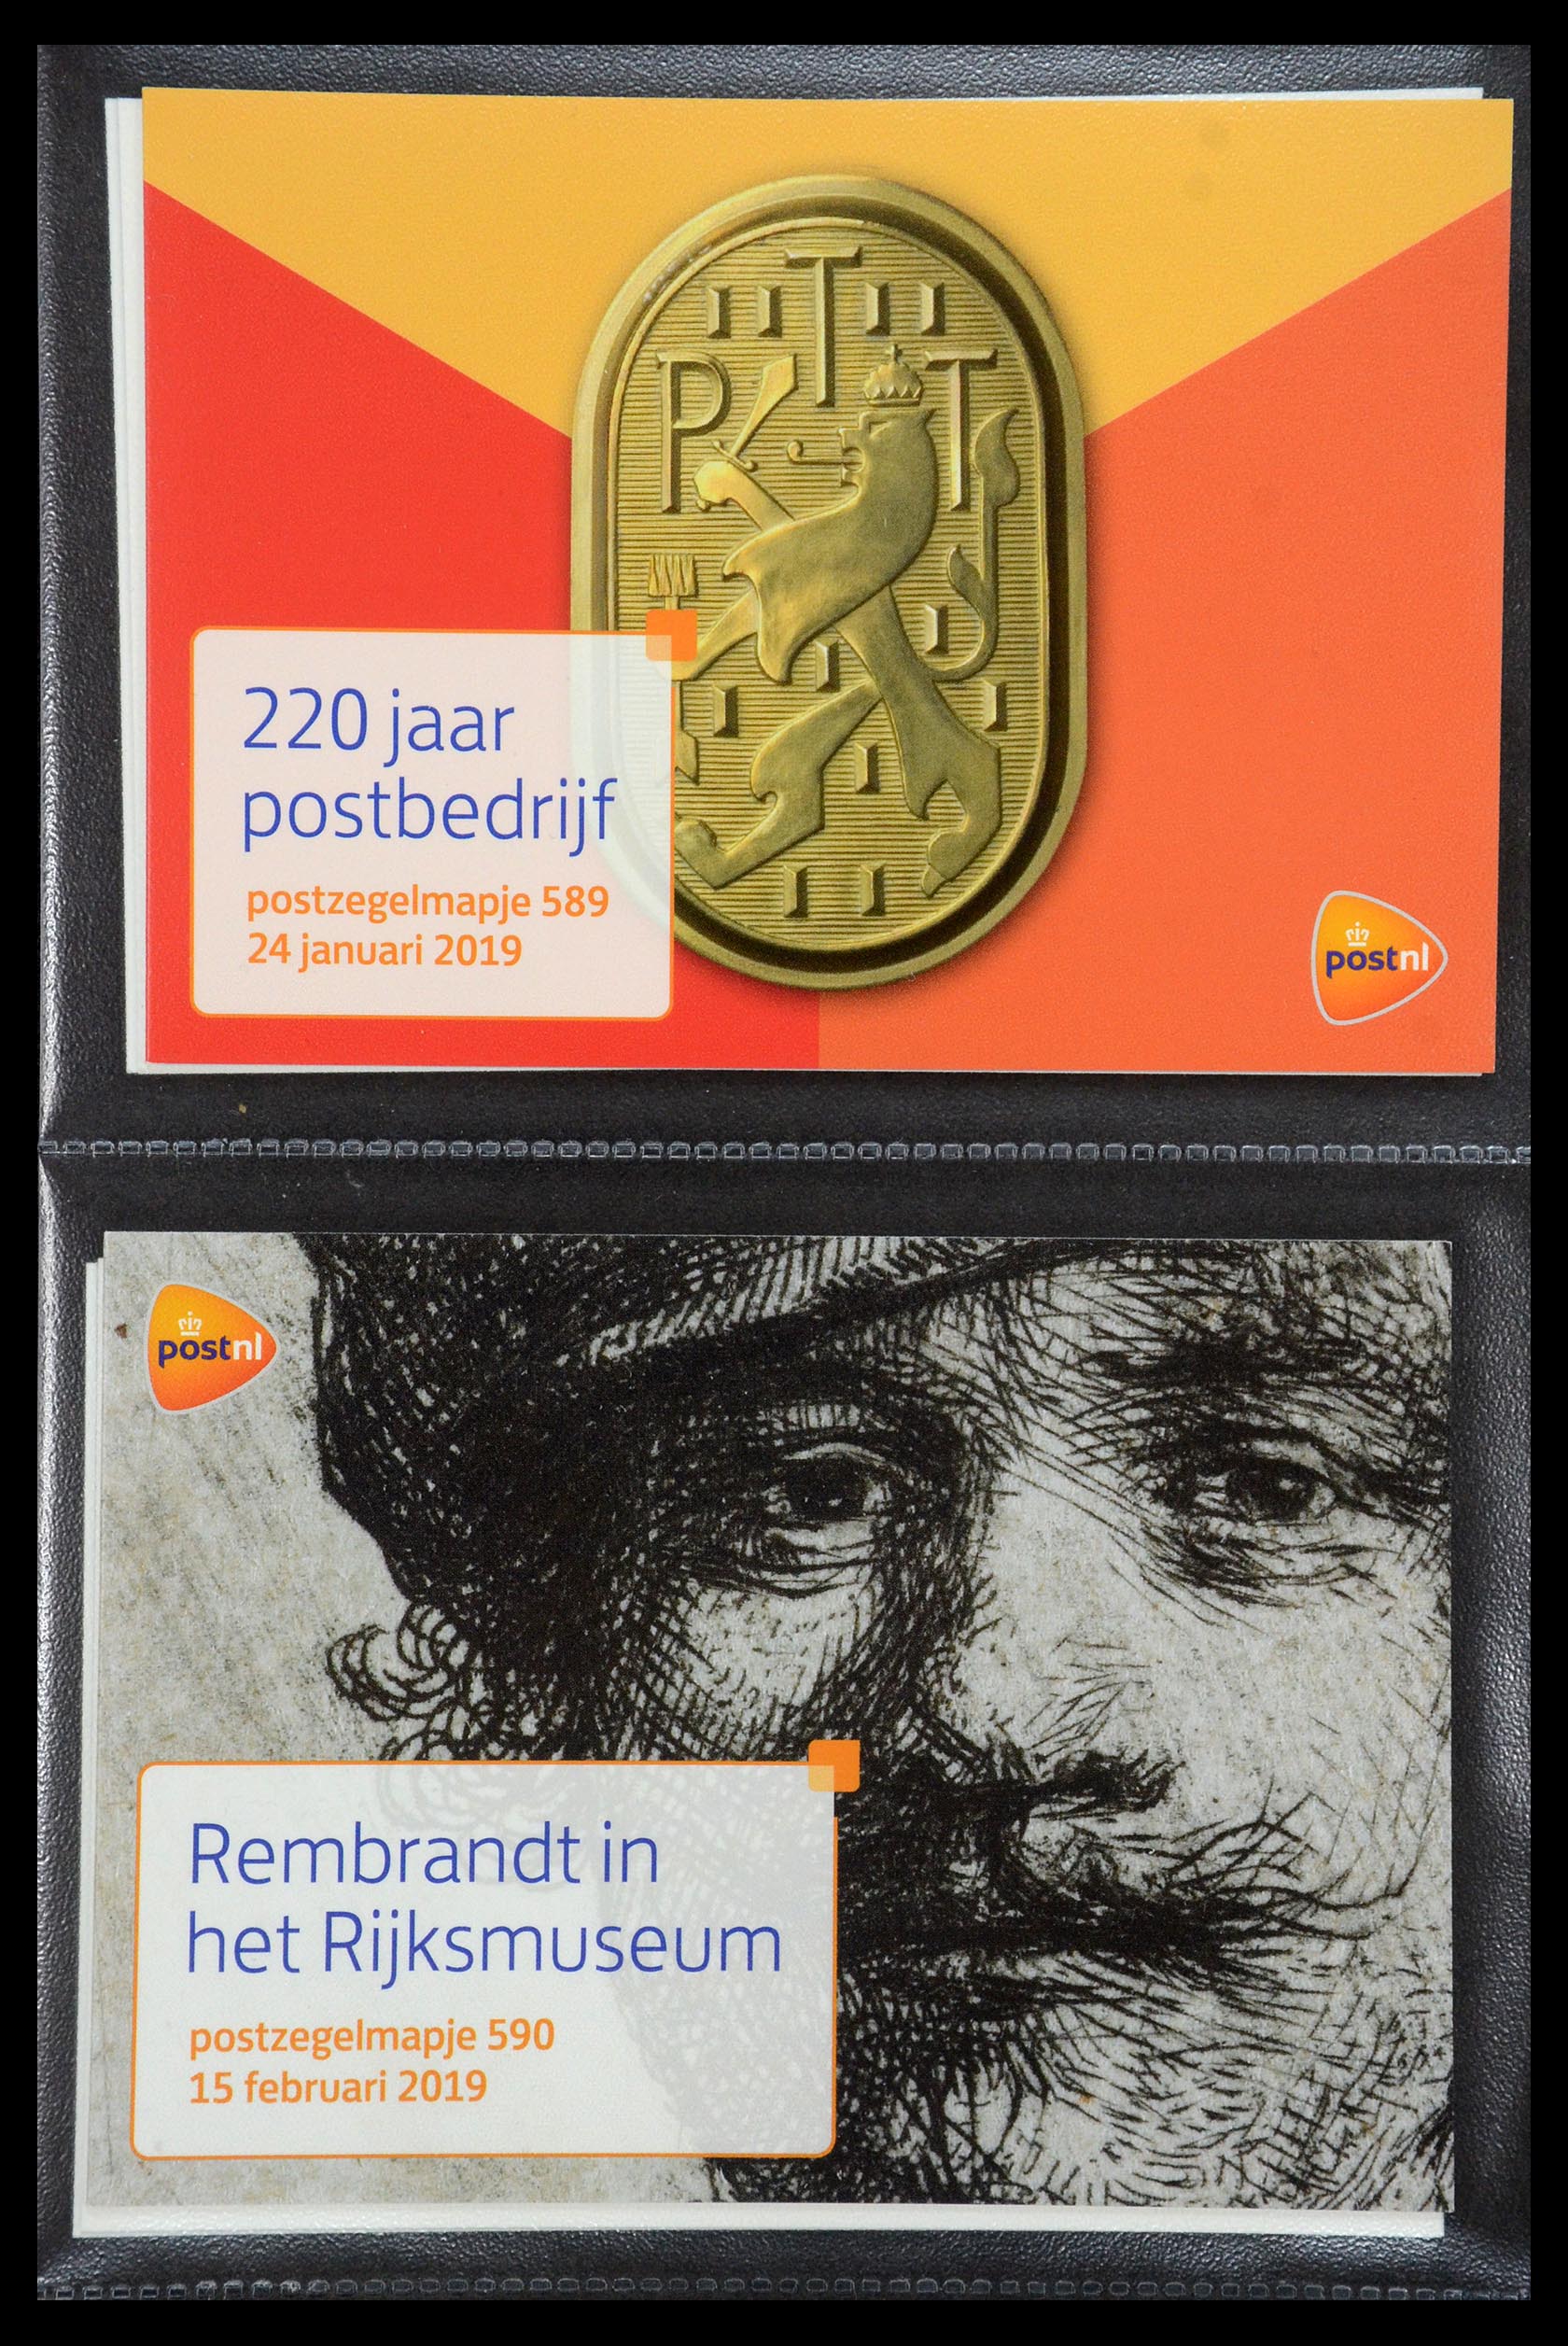 35187 356 - Stamp Collection 35187 Netherlands PTT presentation packs 1982-2019!